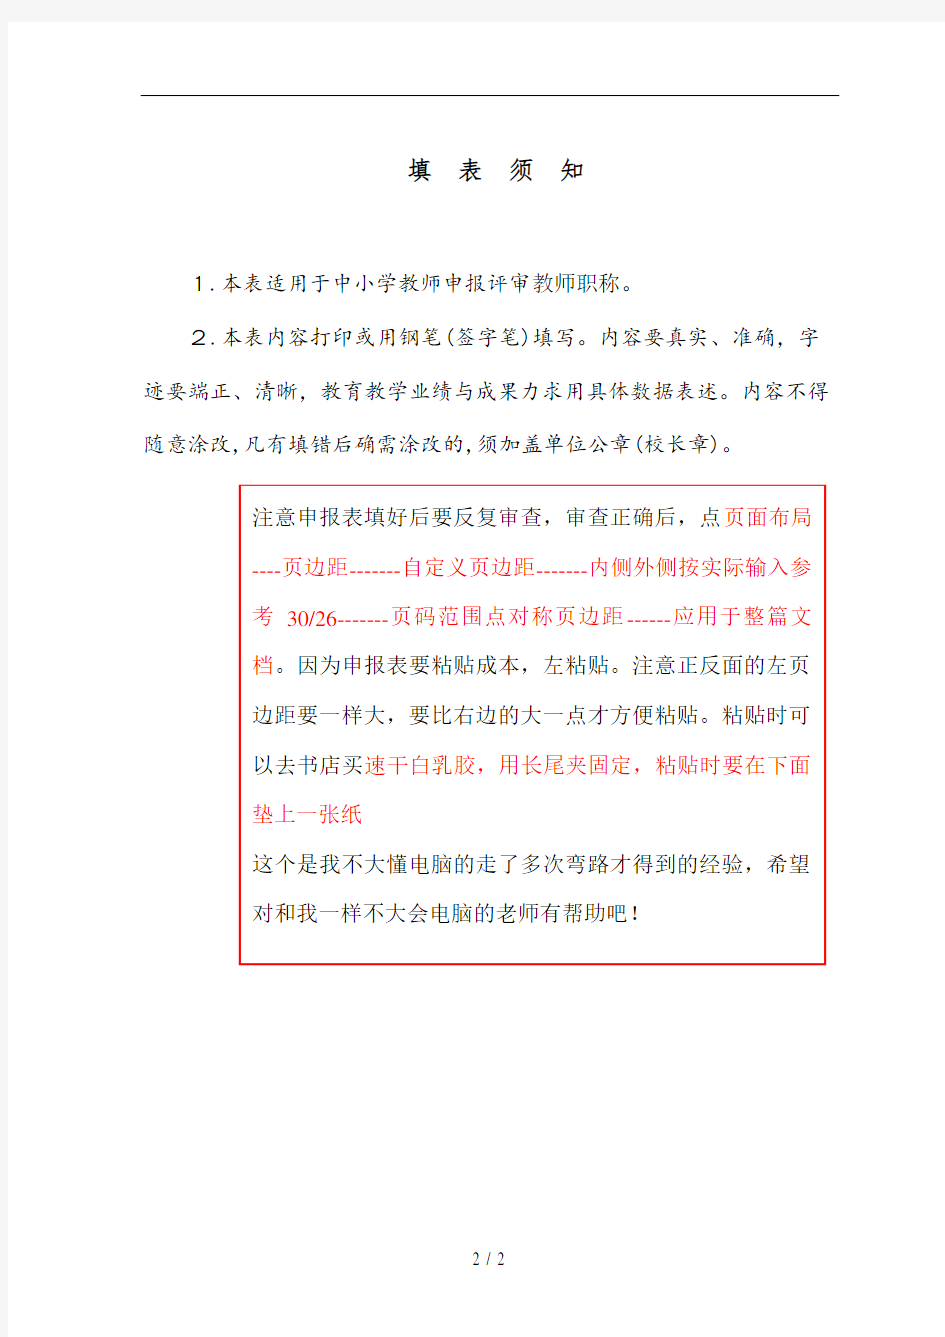 2017年-广东省中小学教师职称评审申报表(初稿样表)